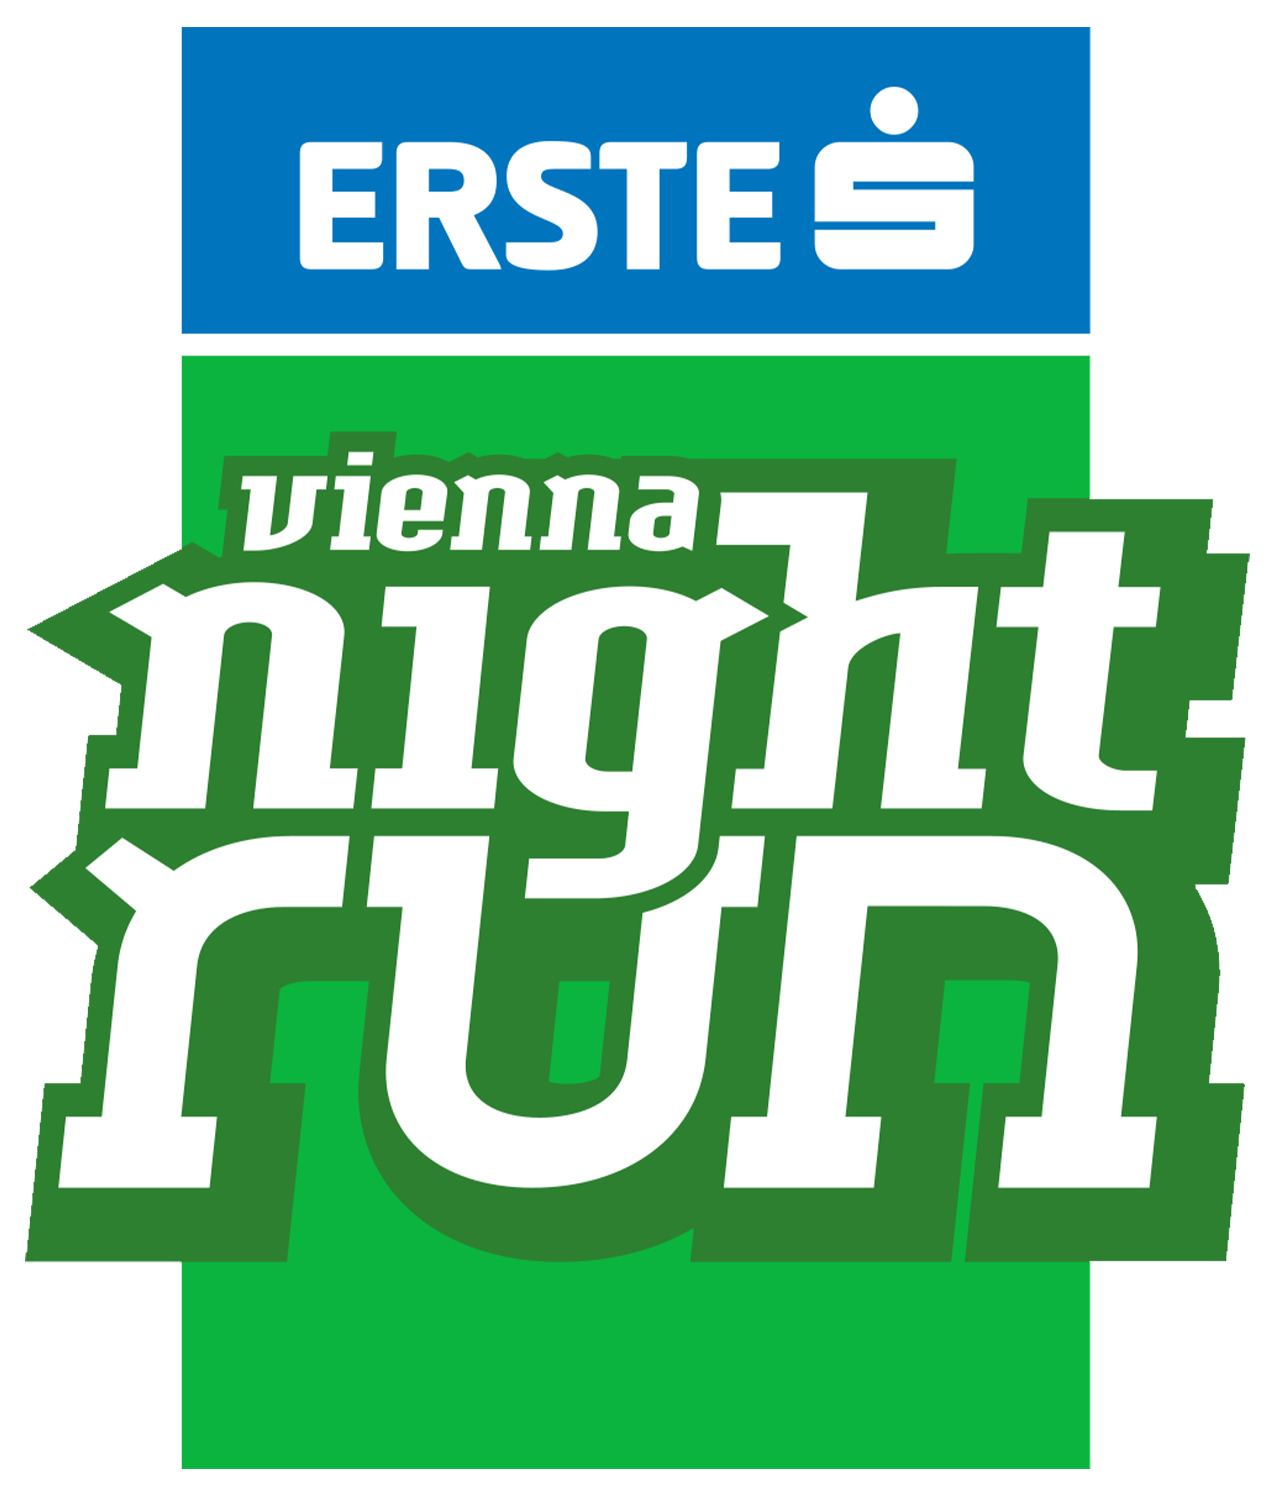 erste bank vienna night run